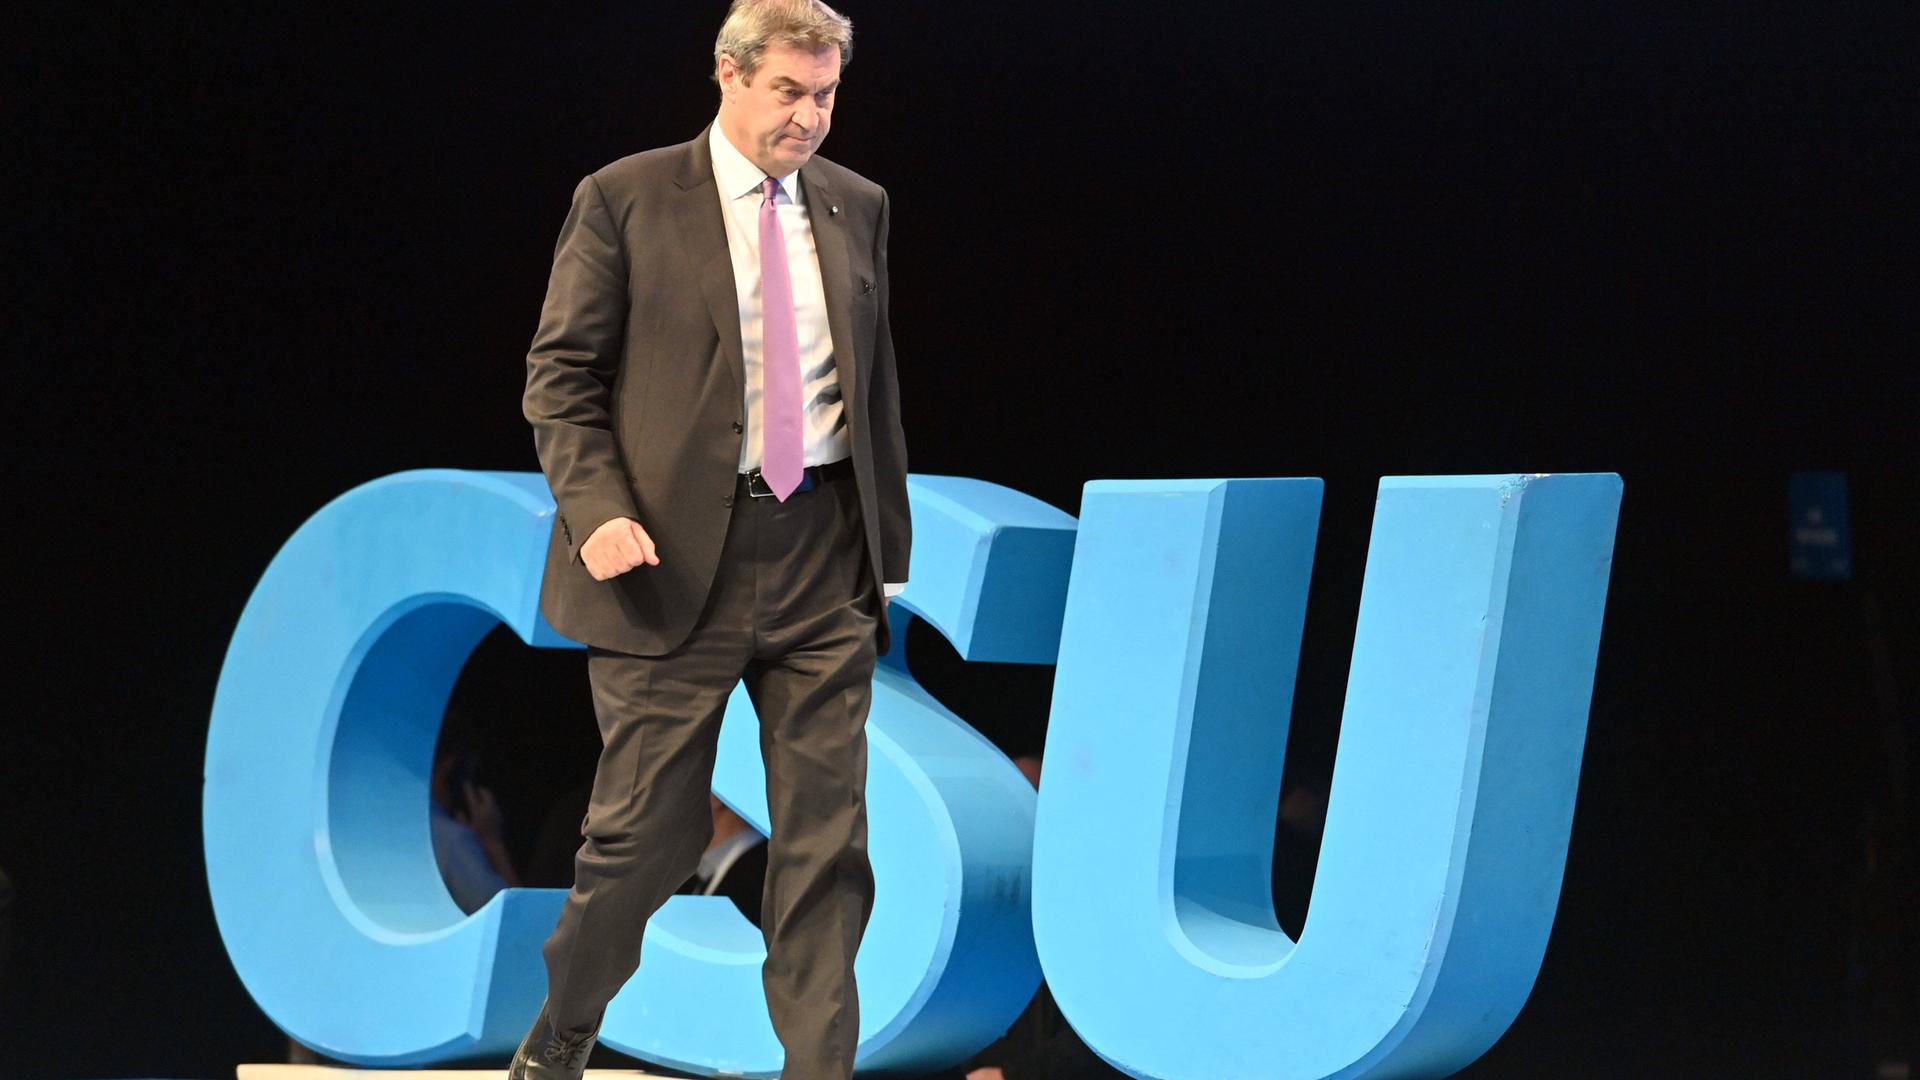 Der bayerische Ministerpräsident und CSU-Vositzende Markus Söder geht auf einer Bühne an einem großen blauen Logo mit den Buchstaben CSU vorbei